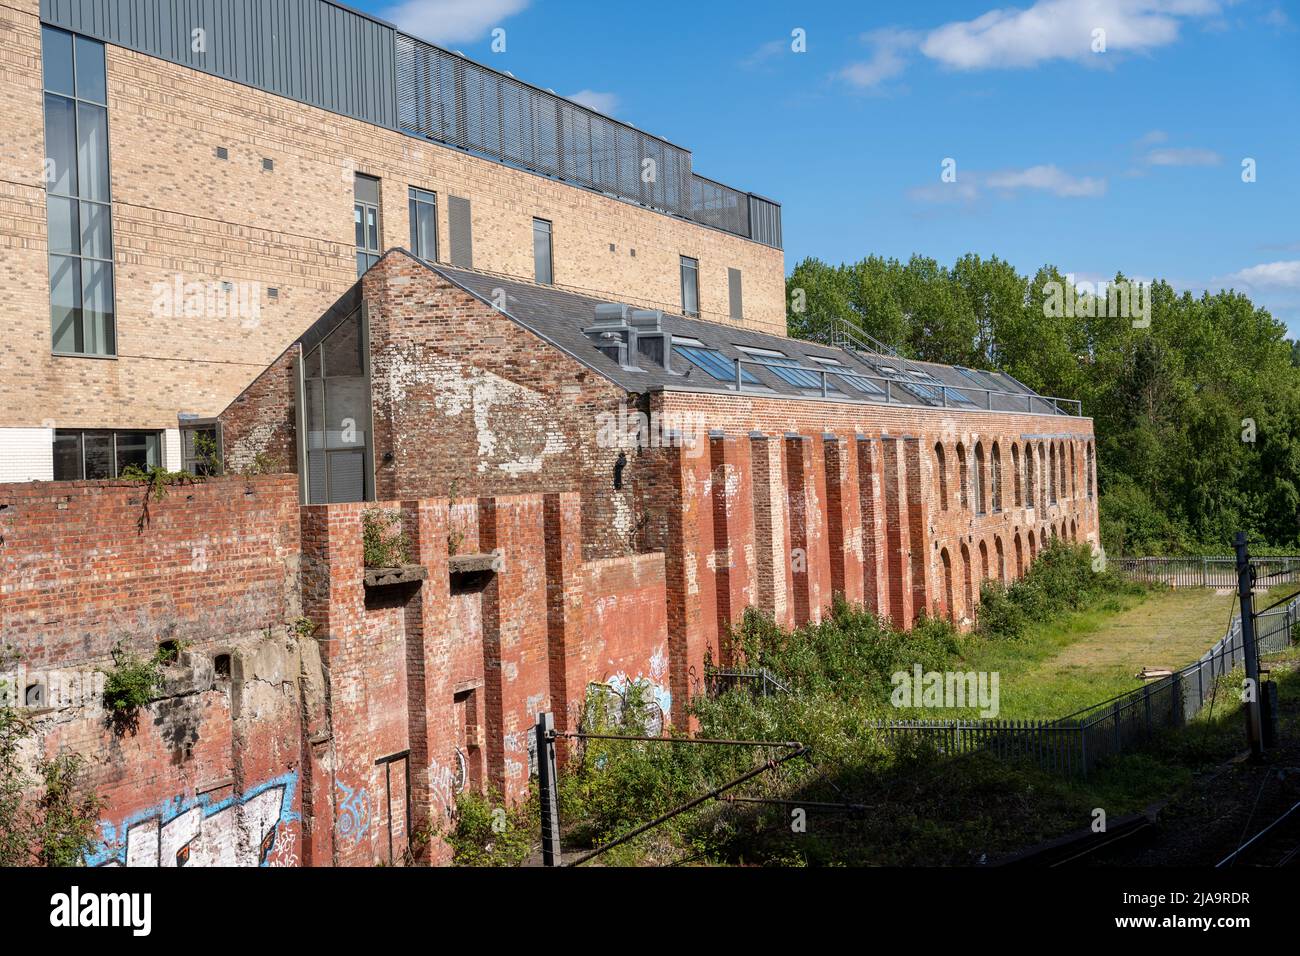 Seitenansicht von North East Futures UTC, zeigt die Wiederverwendung des ehemaligen Eisenbahnbauschuppens Hawthorn Works in Newcastle upon Tyne, Großbritannien. Stockfoto